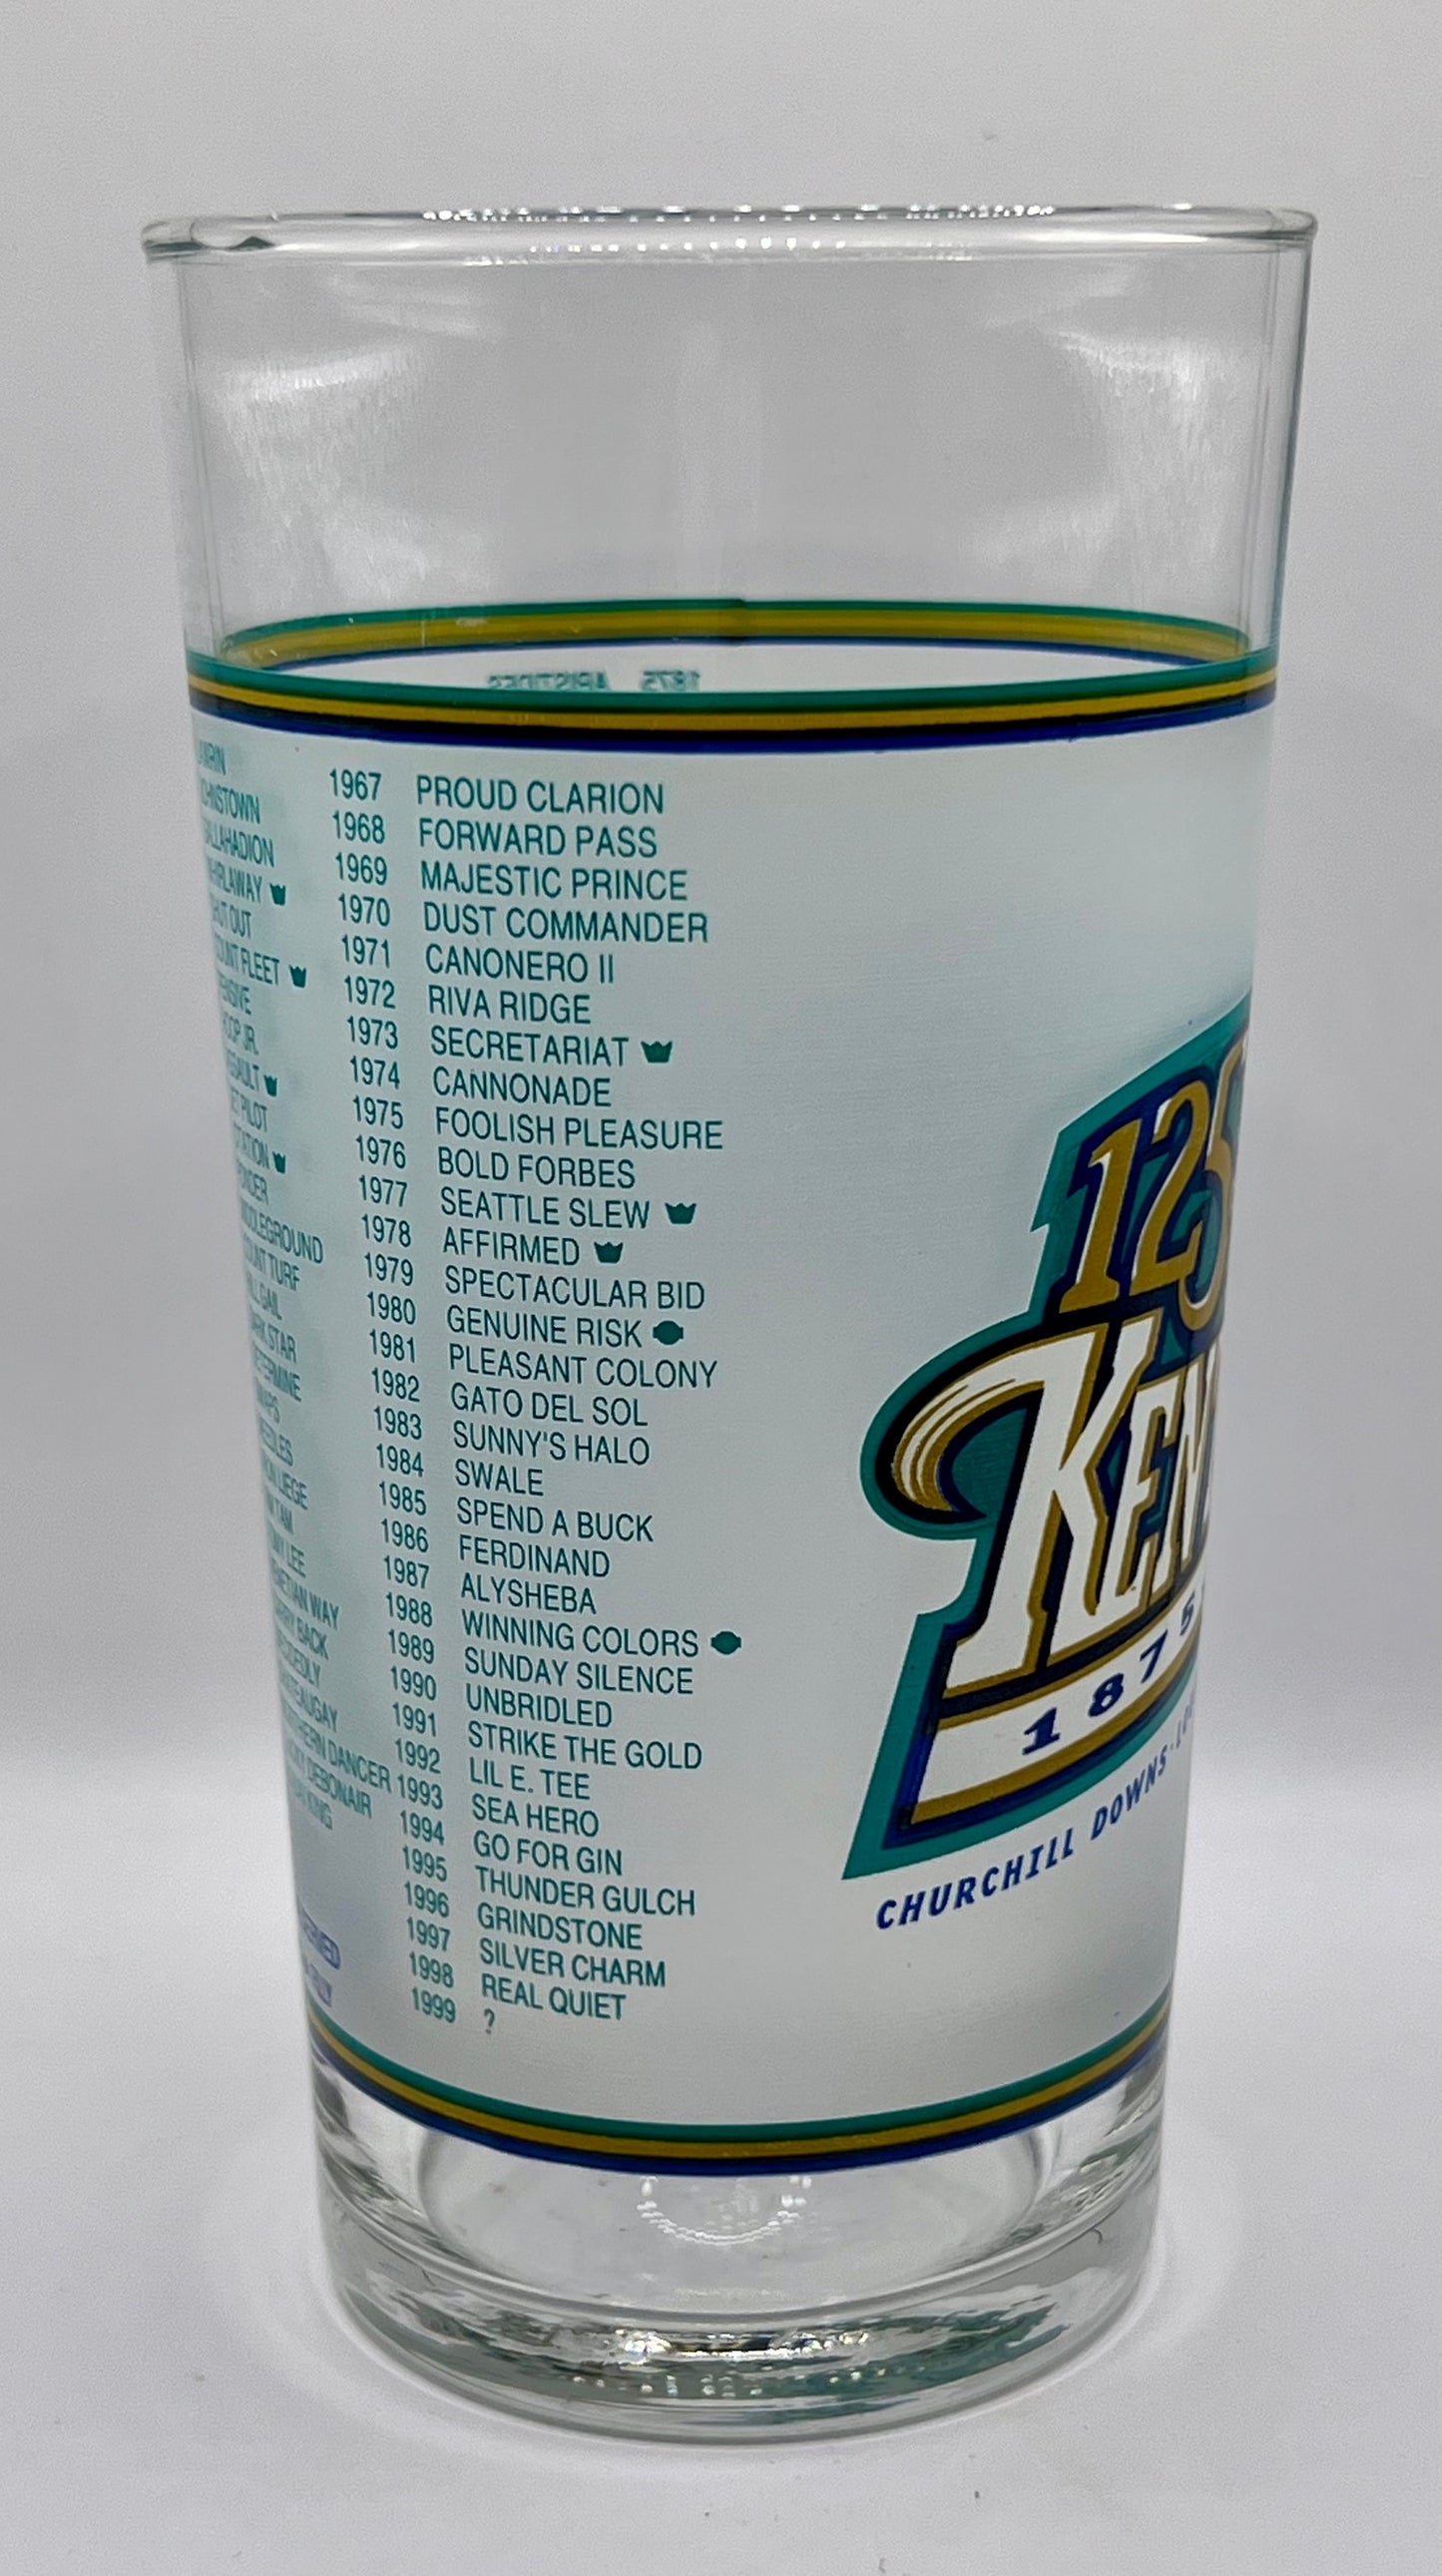 1999 Kentucky Derby Glass